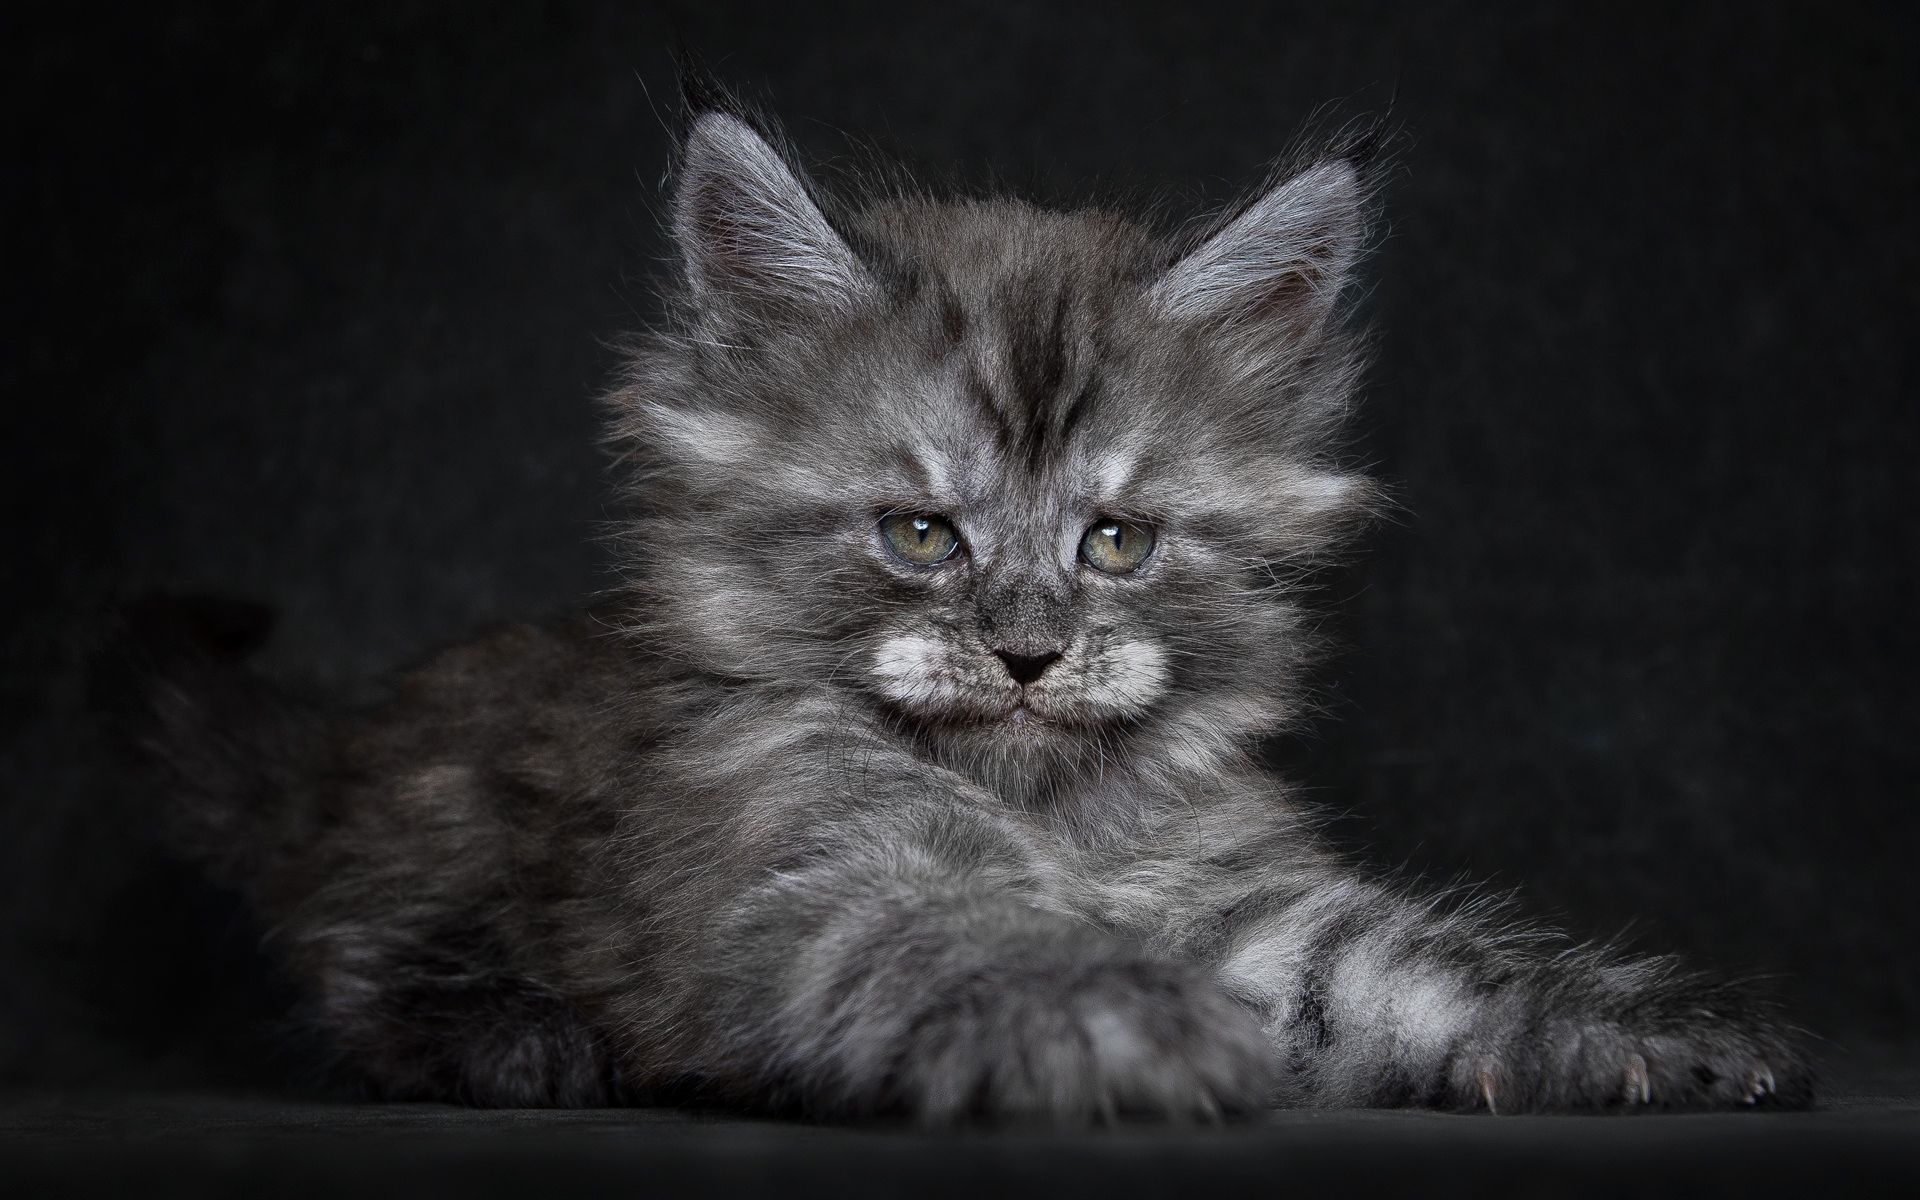 Cute Fluffy Kitten for 1920 x 1200 widescreen resolution